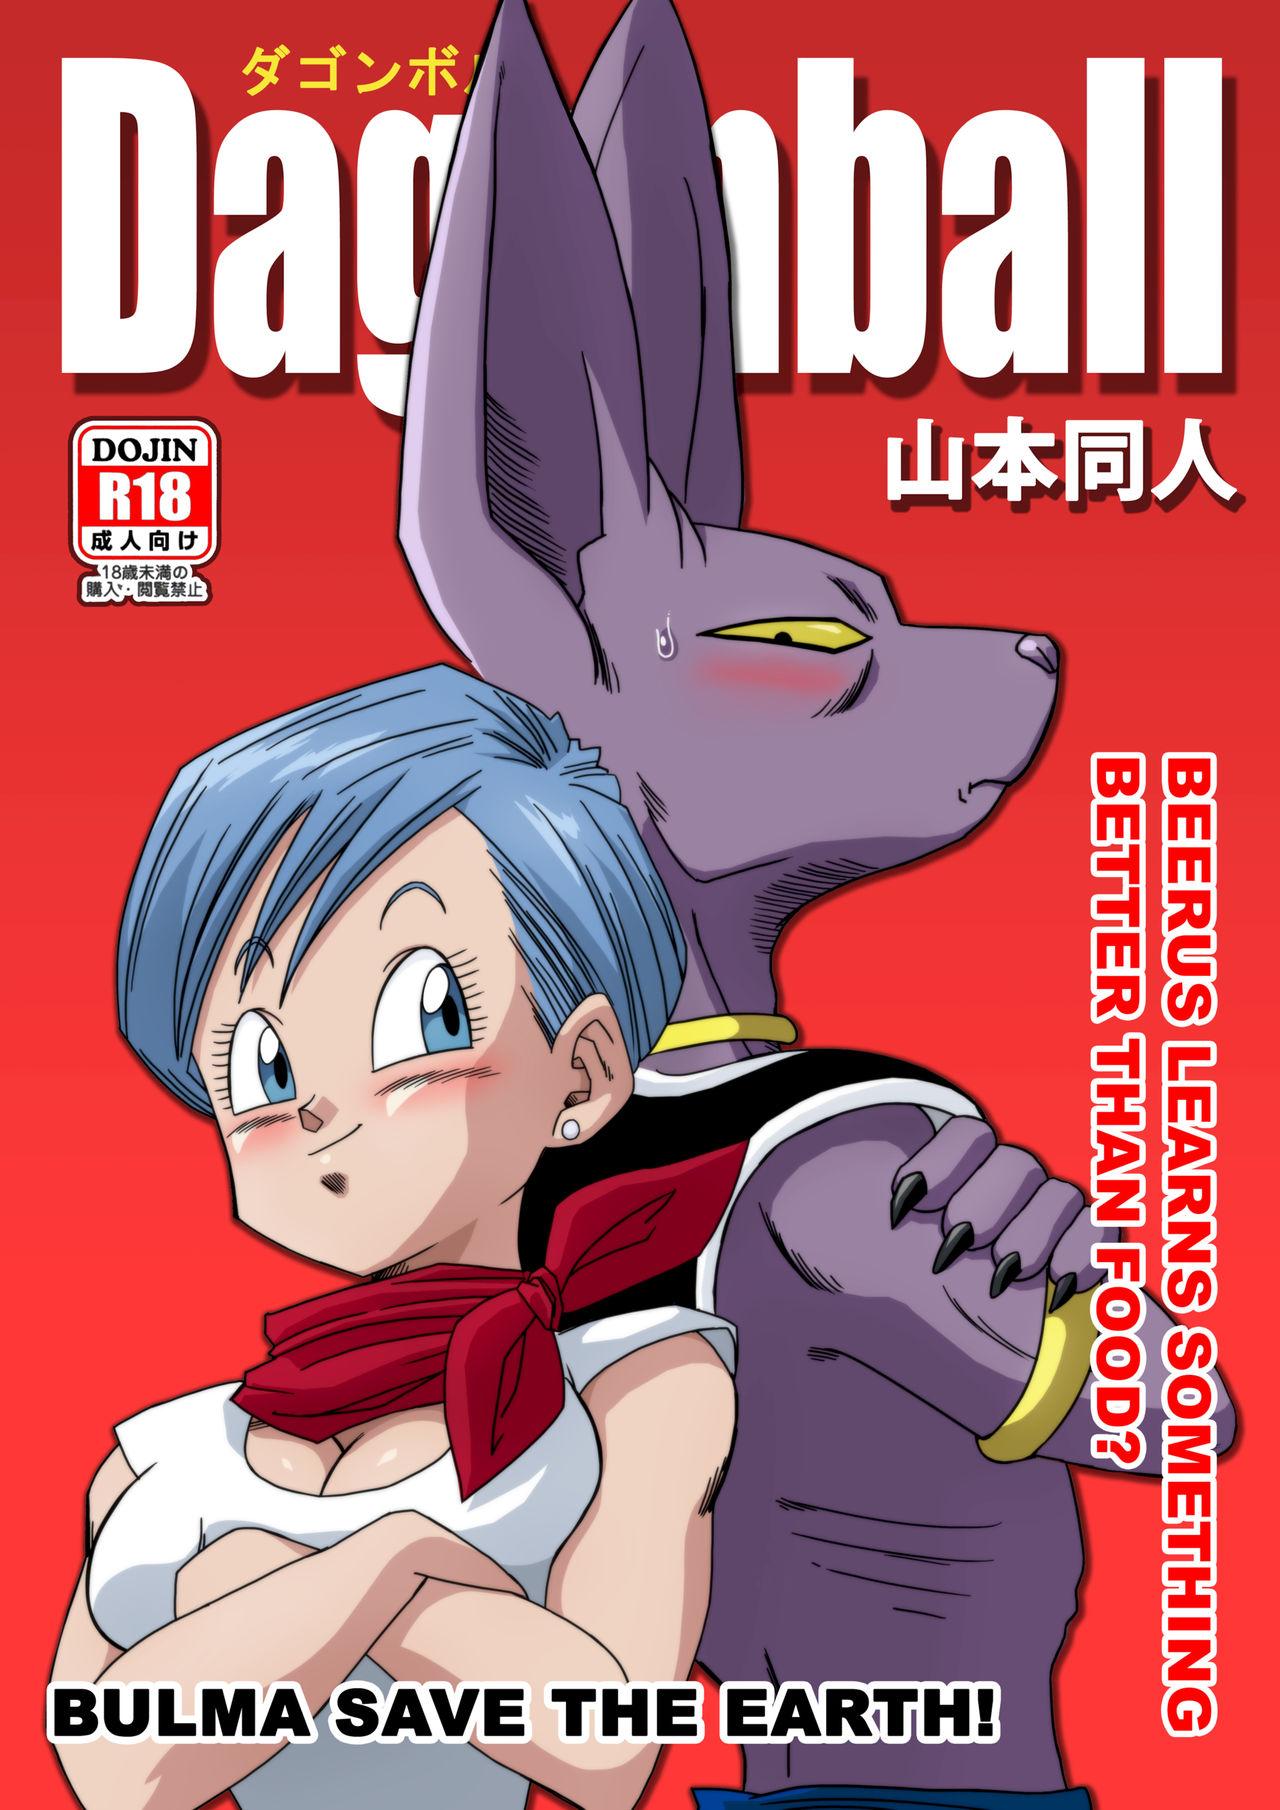 Playing Bulma Saves The Earth! - Dragon ball Asia - Page 1